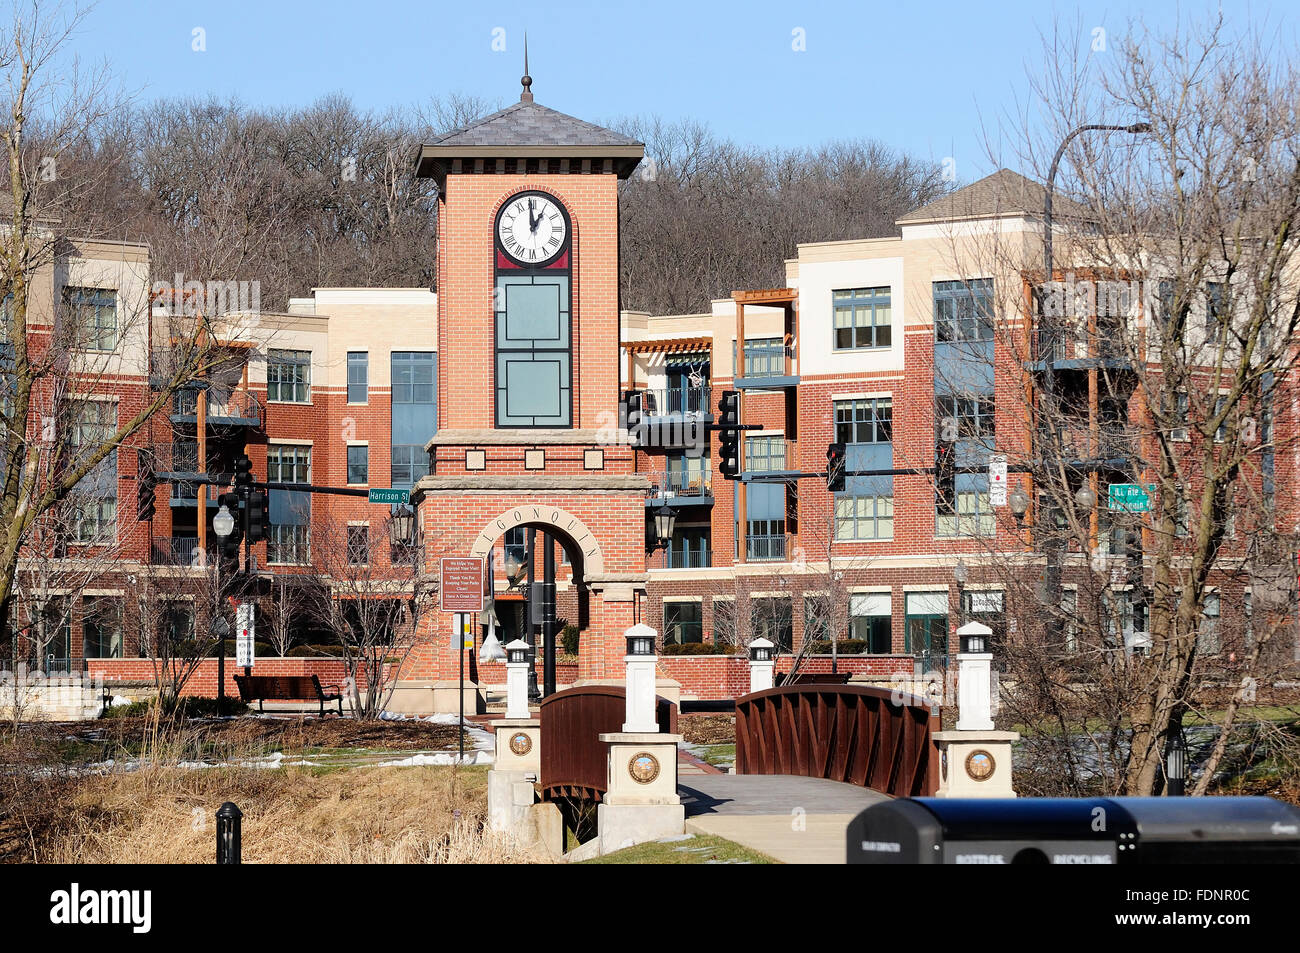 Tour de l'horloge et Condos dans la région de Algonquin, Illinois, USA. Banque D'Images